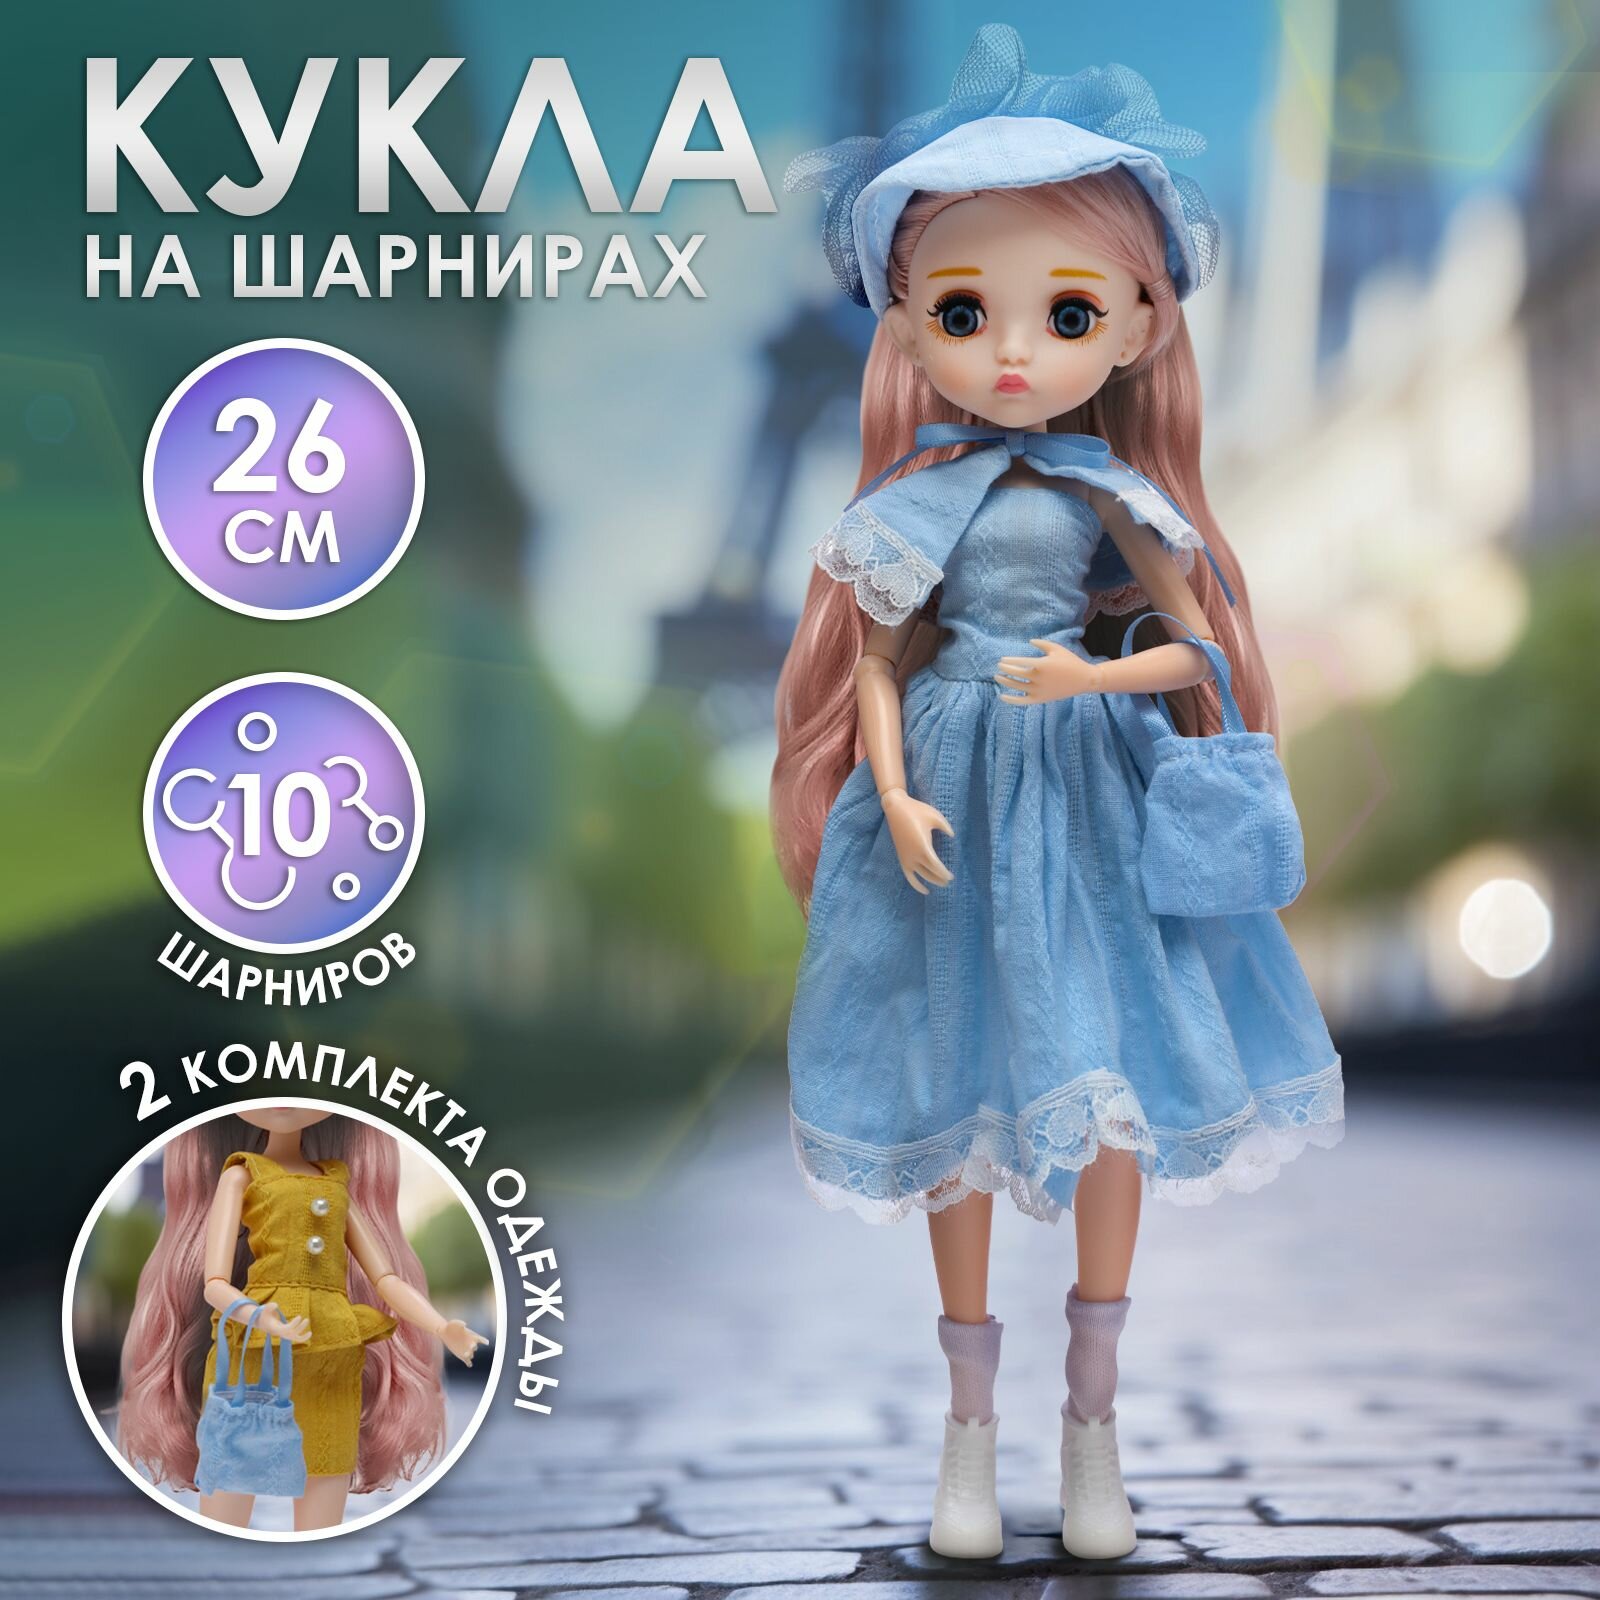 Кукла шарнирная WiMi коллекционная с одеждой, бжд на шарнирах